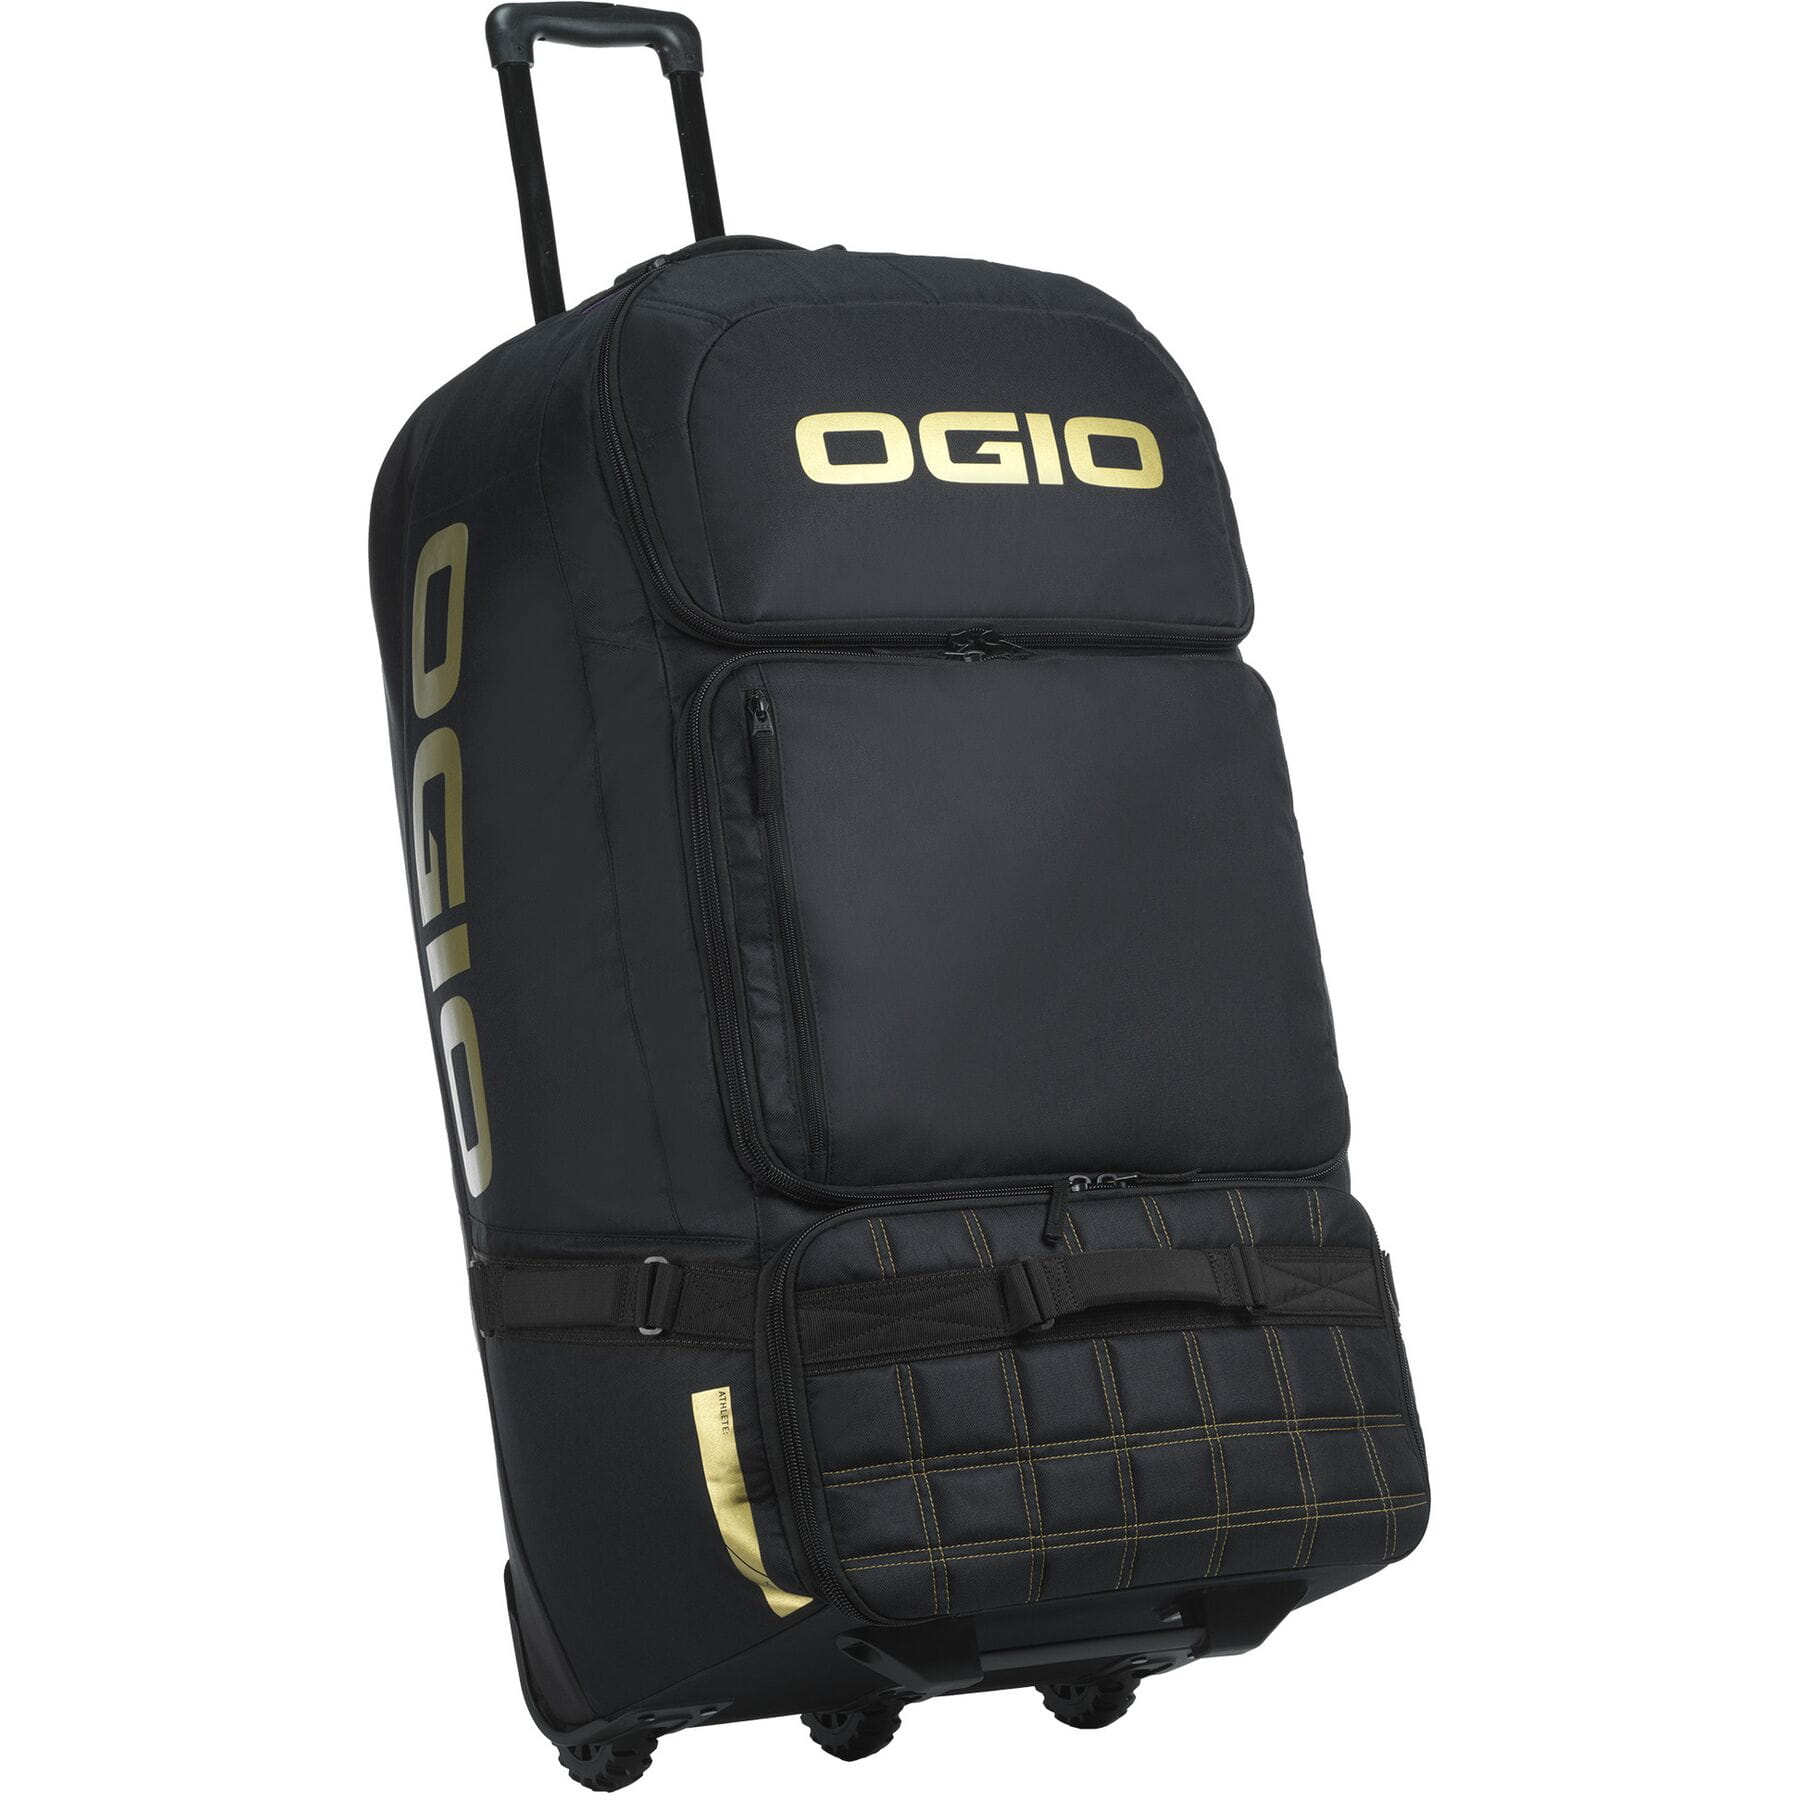 Ogio Dozer Gear Bag Black